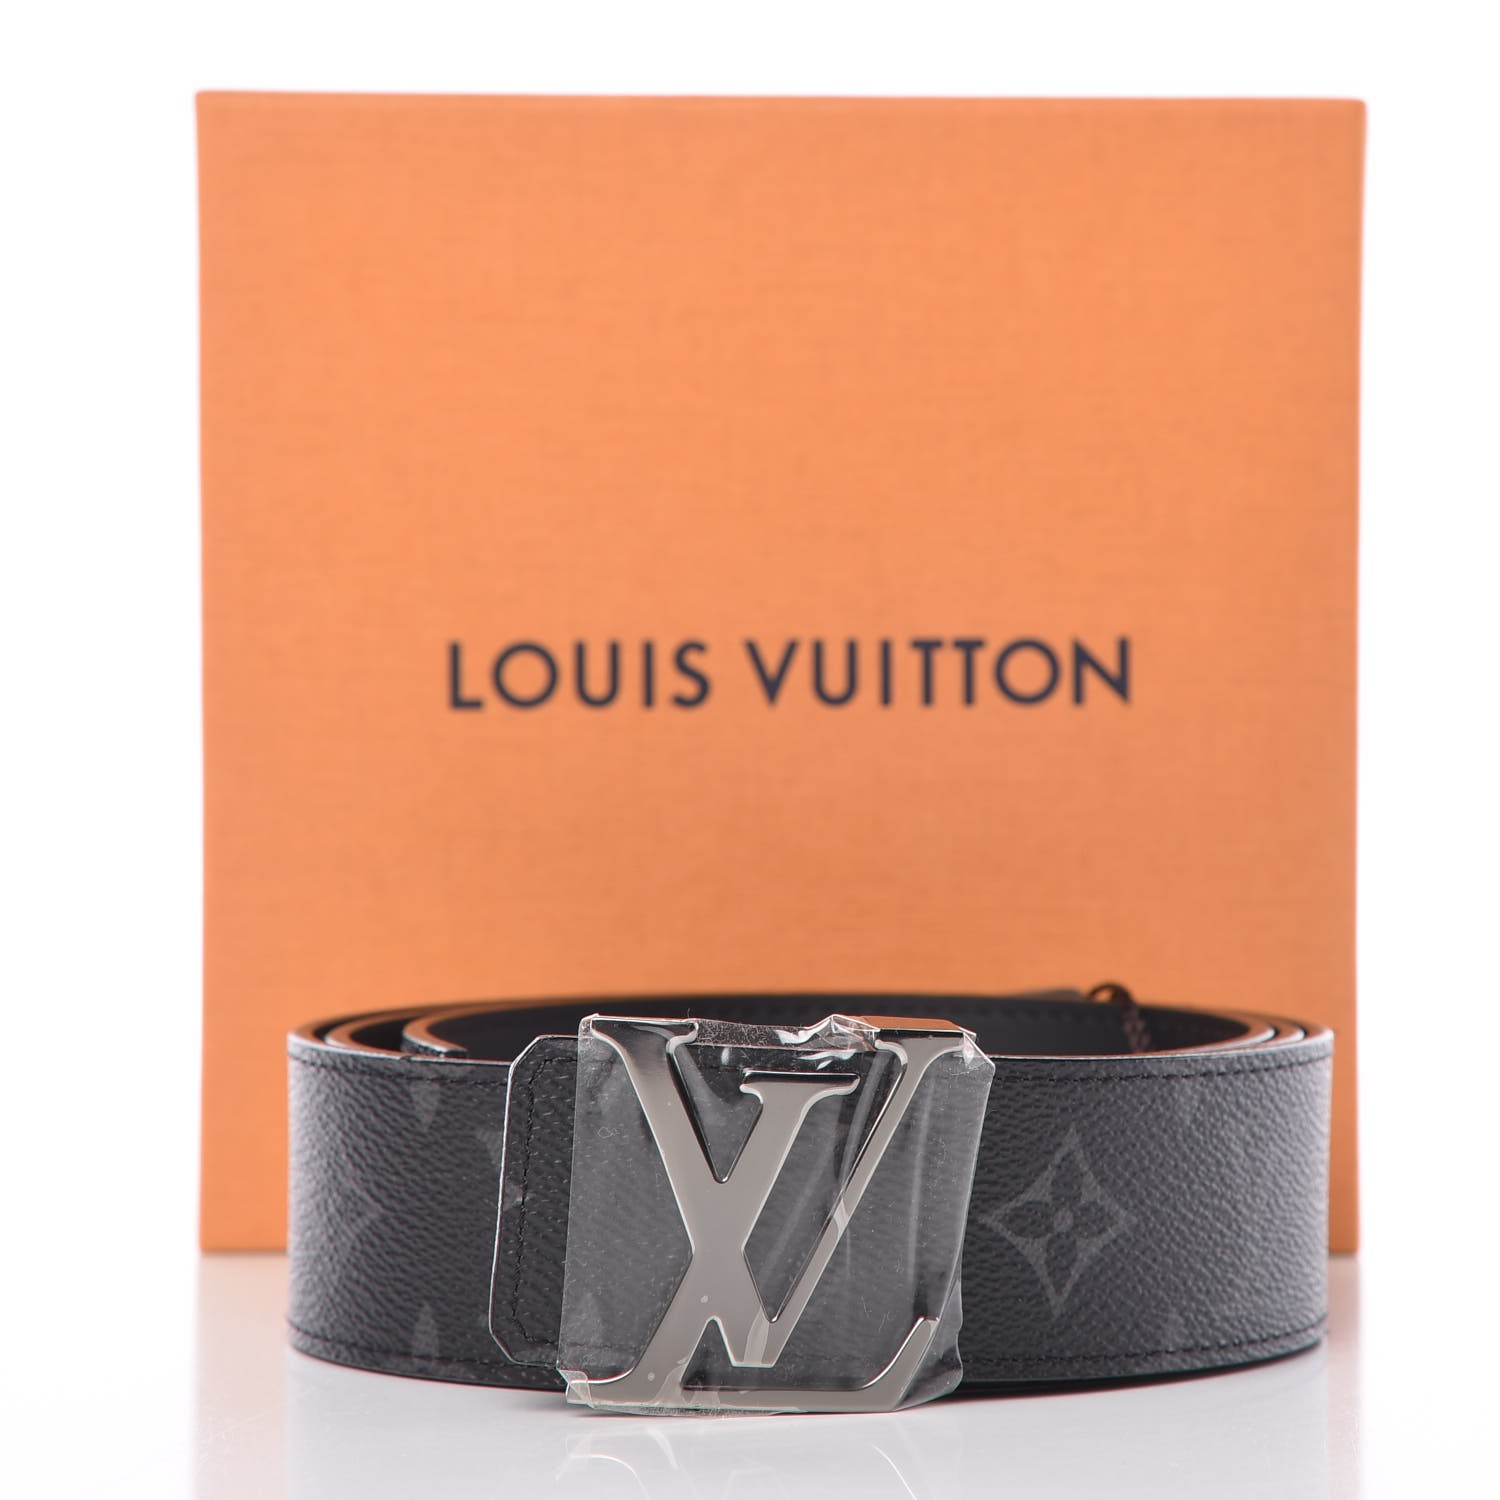 LOUIS VUITTON Monogram Eclipse LV Initials Belt Black Size 100/40